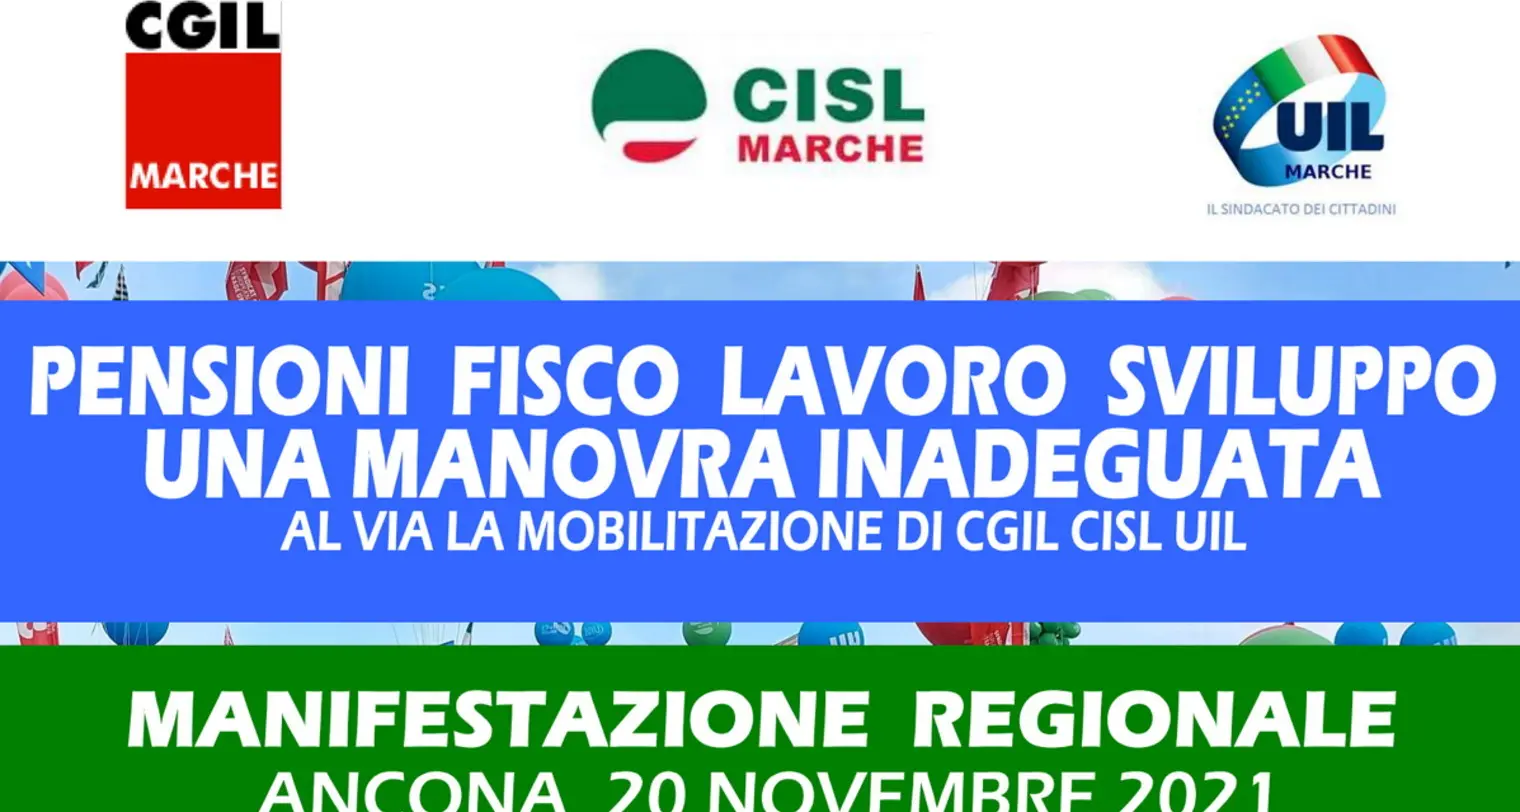 Manovra: prosegue mobilitazione CGIL, CISL, UIL, Landini sabato nelle Marche